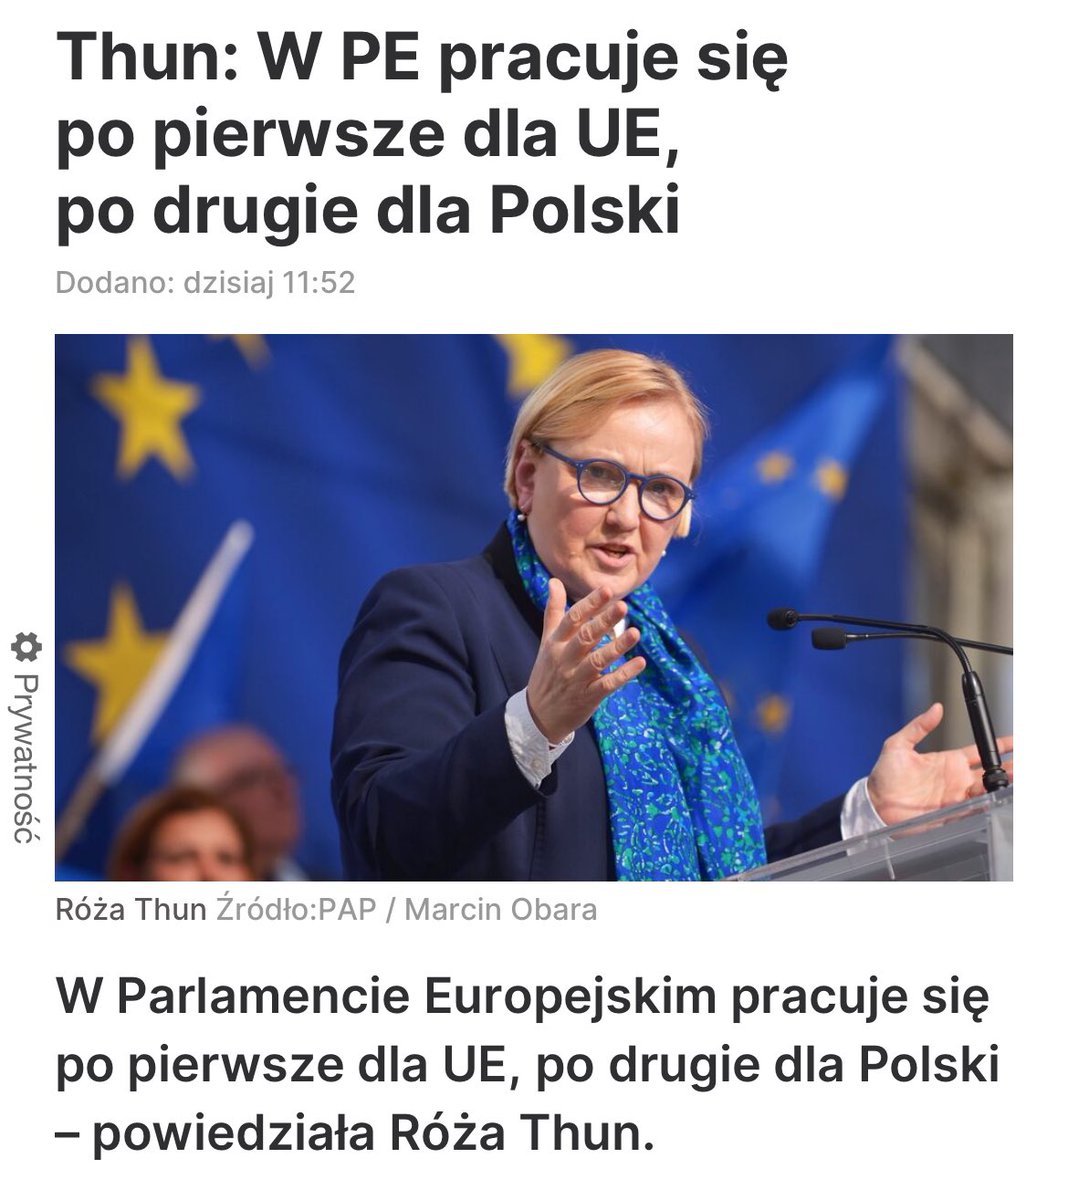 W tym właśnie problem, że ci ludzie od początku naszej obecności w UE nie zrozumieli, że obowiązkiem europosłów jest pracować dla Polski. Po pierwsze Polska!